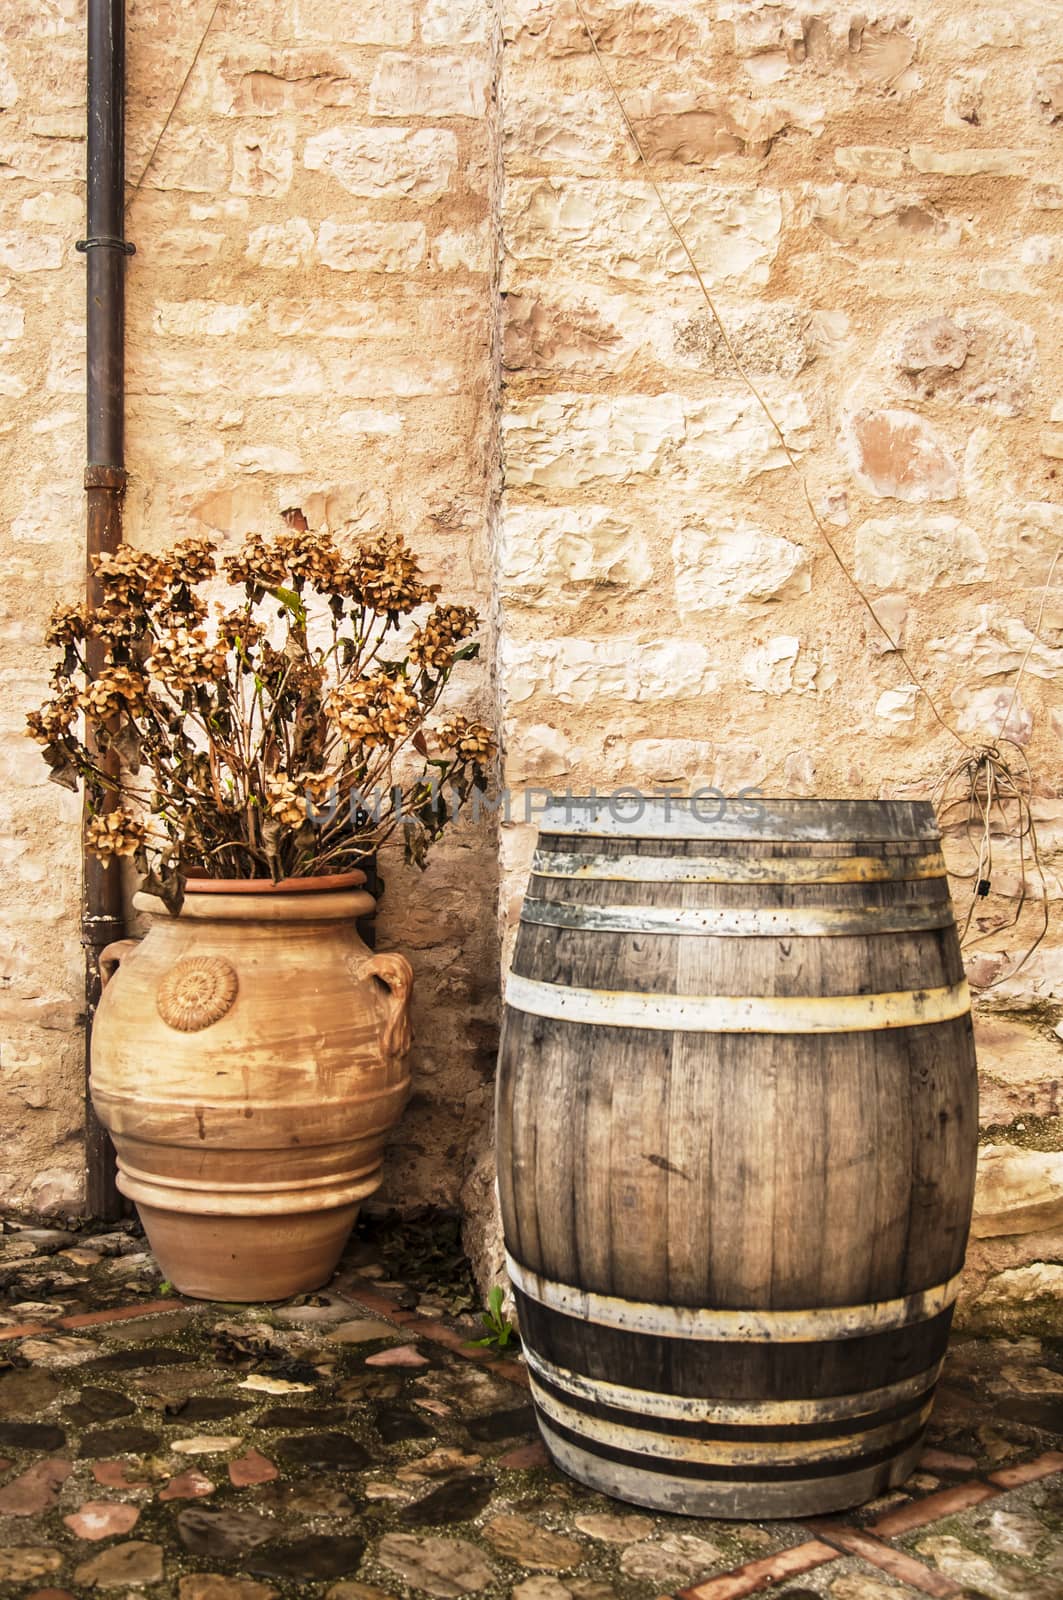 Barrel and vase by edella